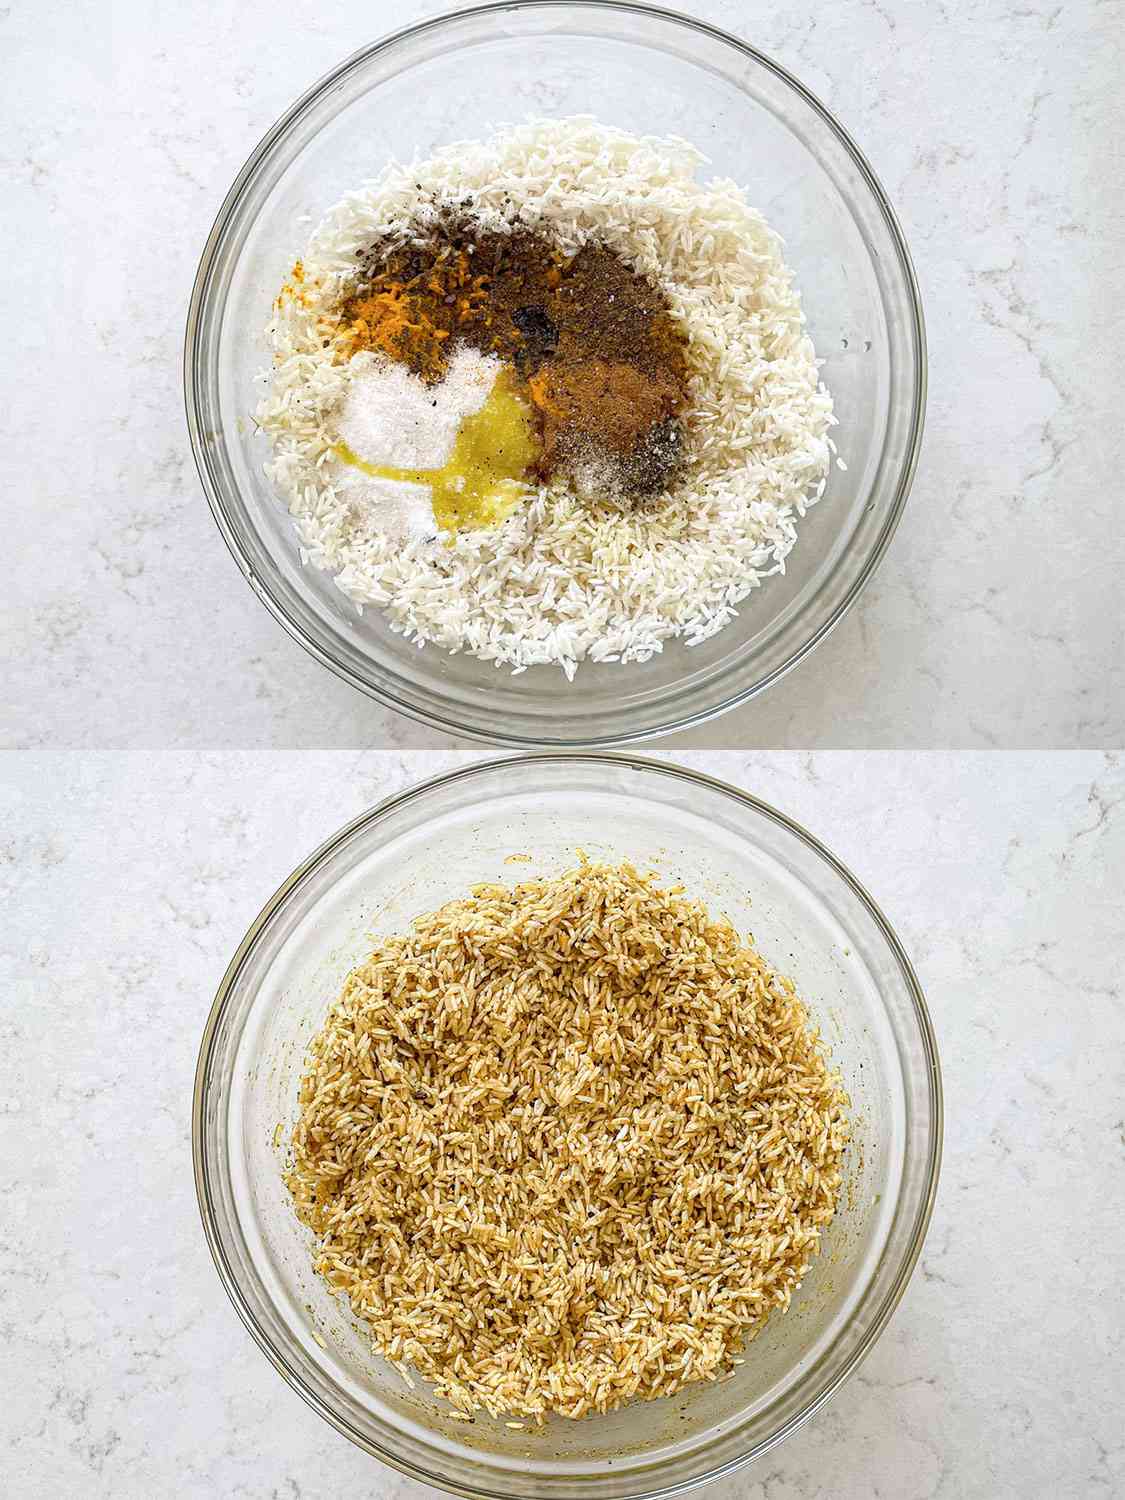 两幅图片拼贴:盛在碗里的米饭，上面放着香料;拌有香料的米饭